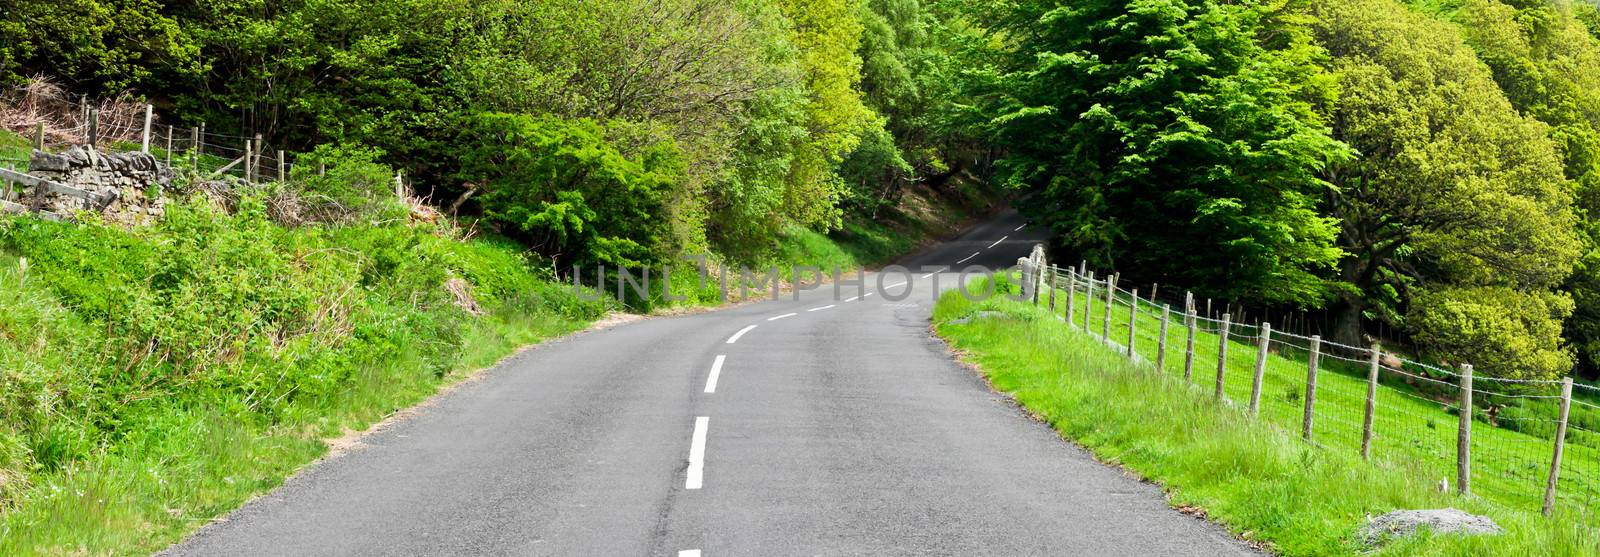 Rural road by trgowanlock